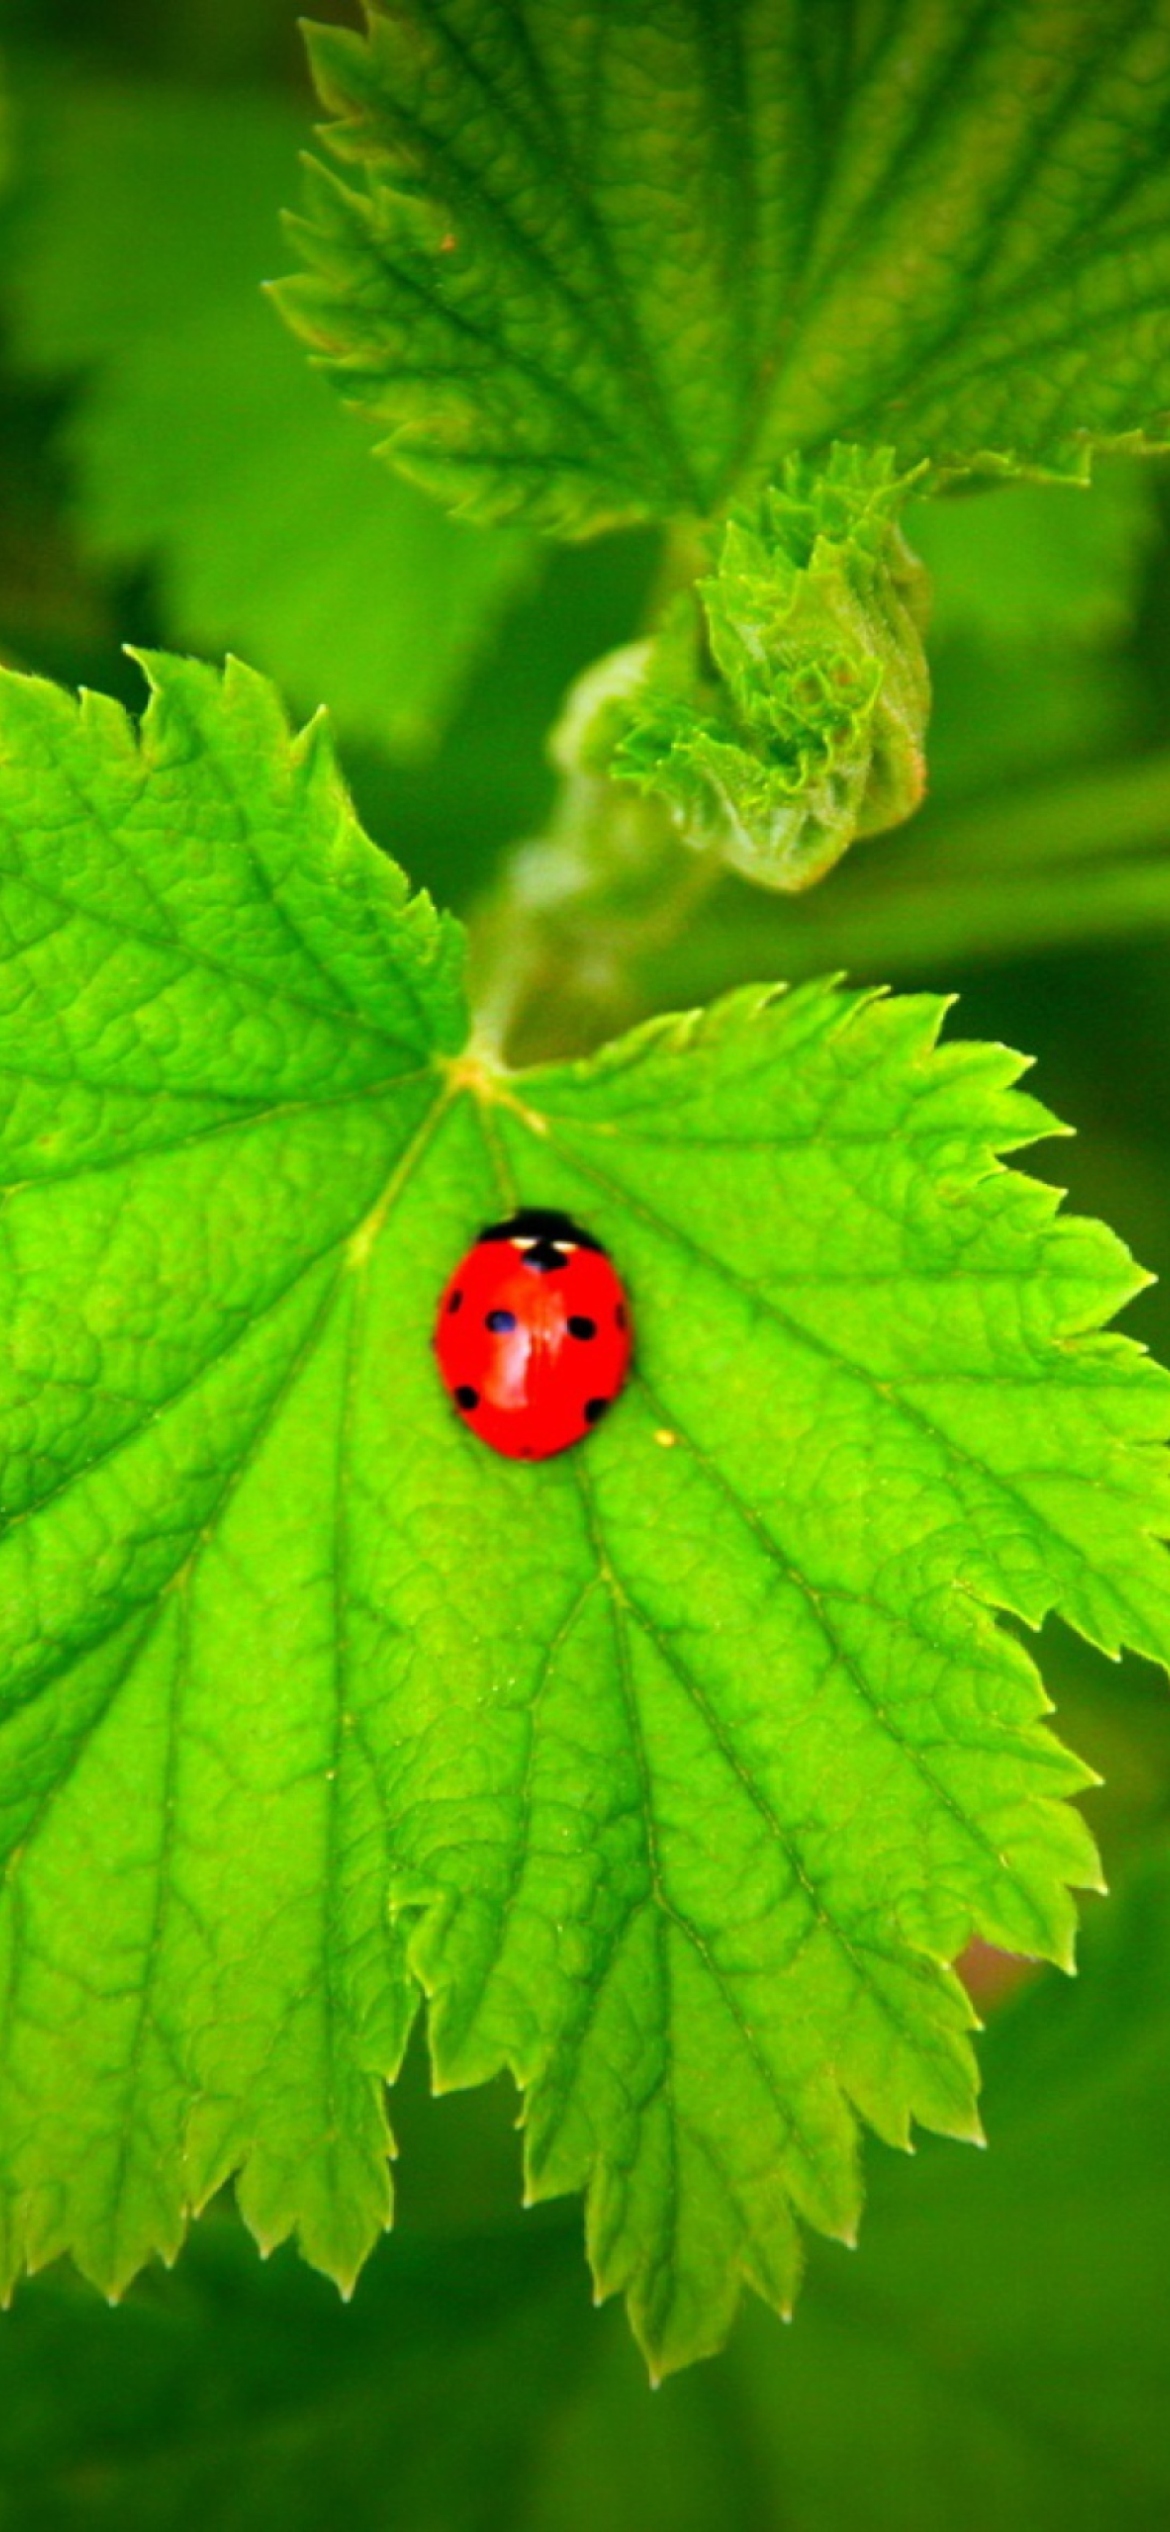 Обои Red Ladybug On Green Leaf 1170x2532